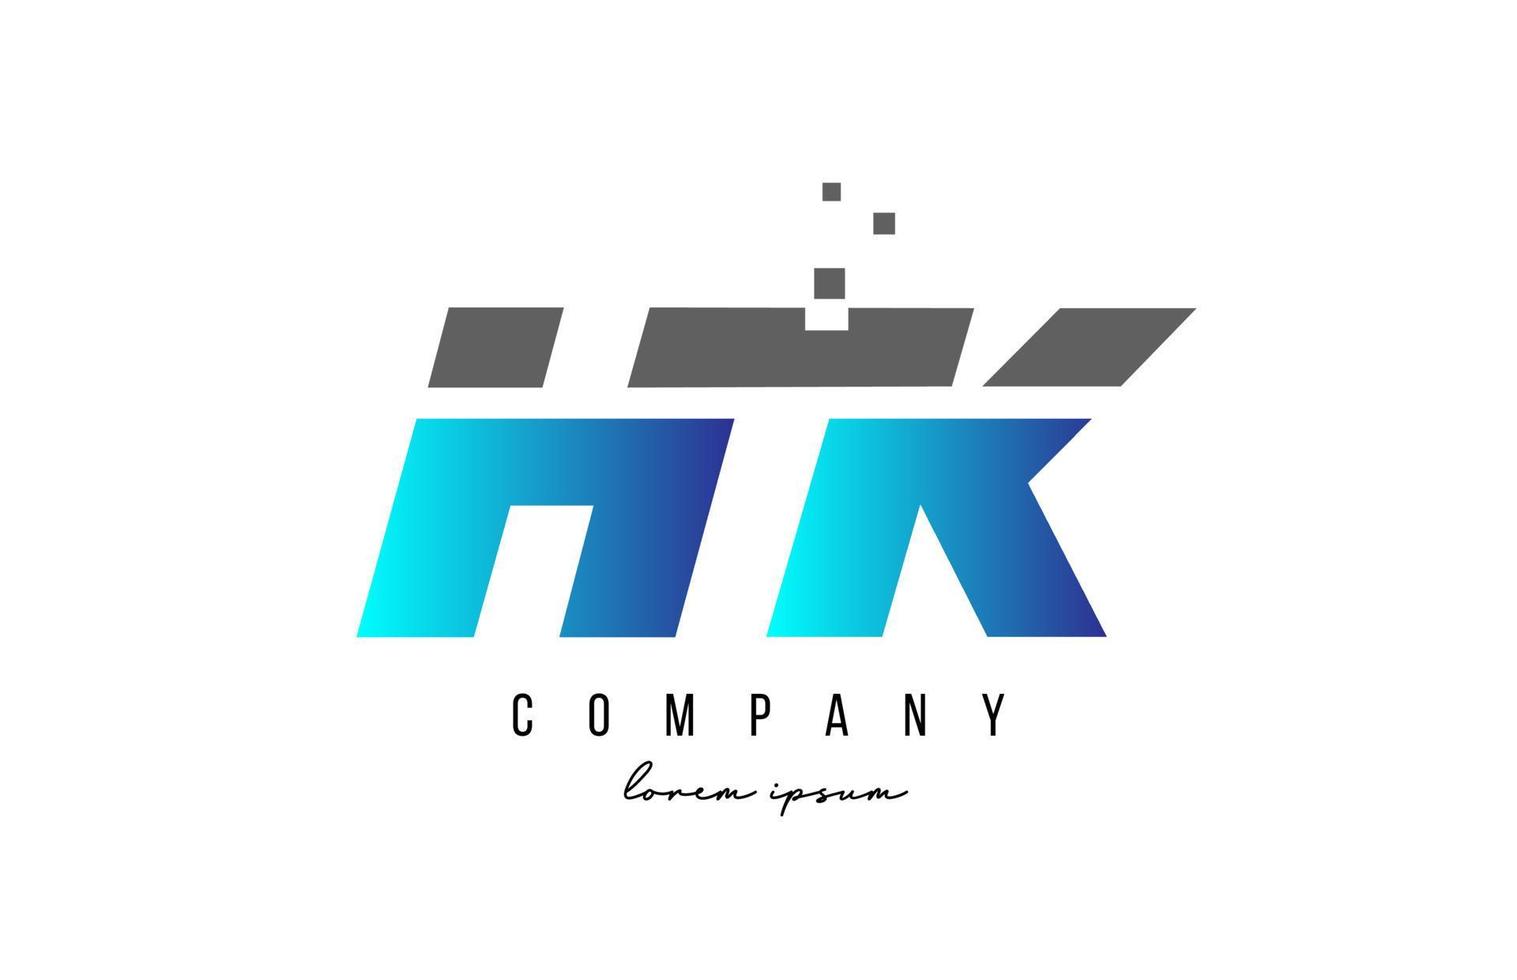 combinaison de logo de lettre de l'alphabet hk hk en bleu et gris. conception d'icônes créatives pour entreprise et entreprise vecteur